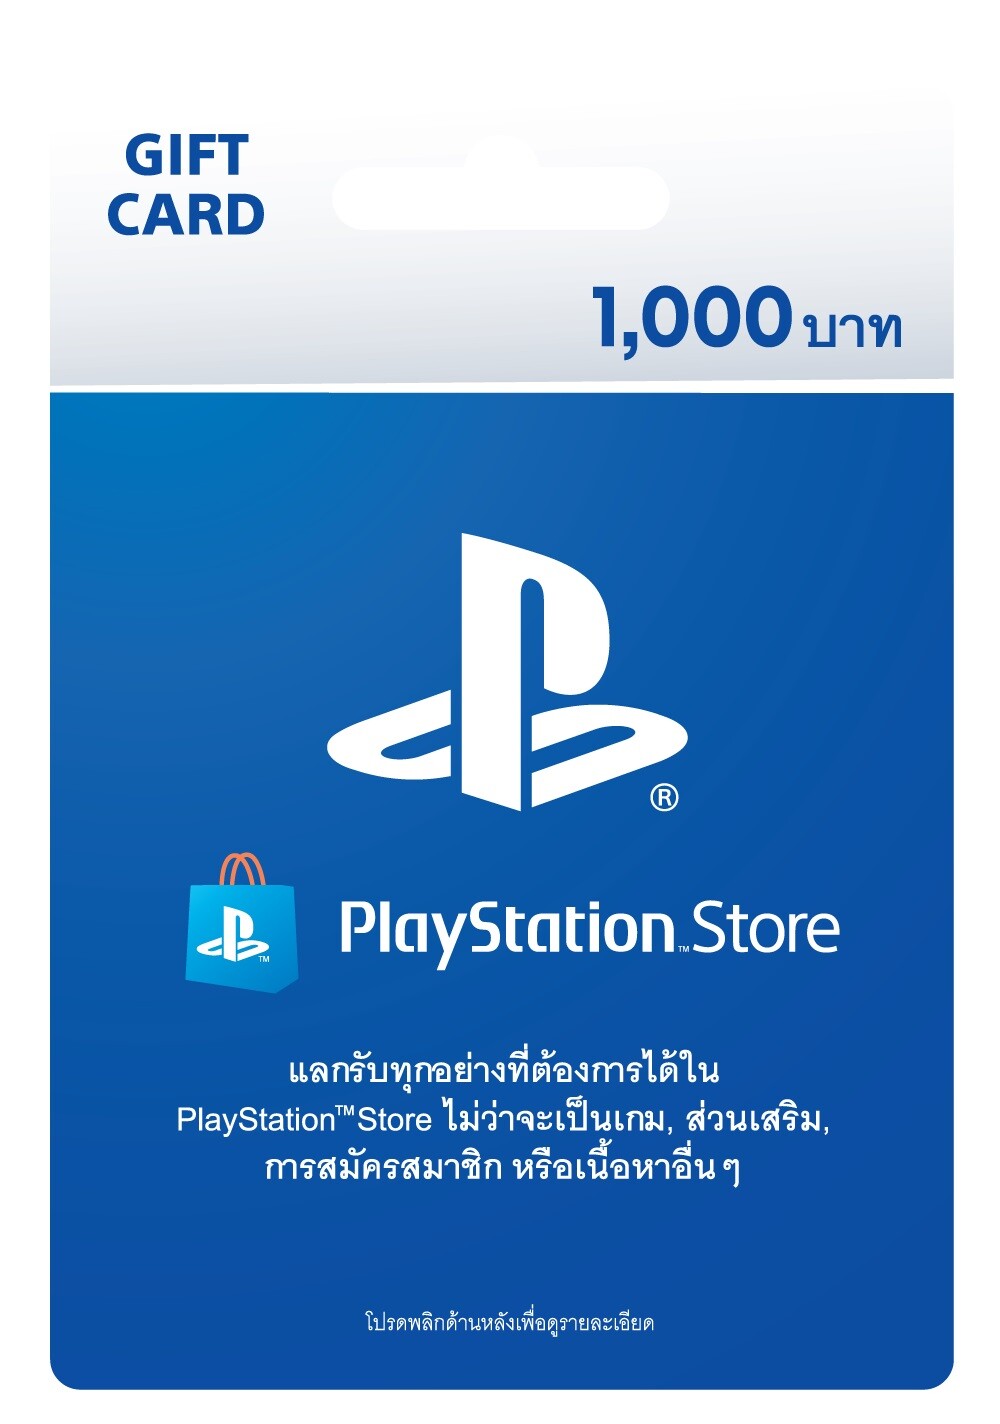 "คอมเซเว่น" ตอบรับดีมานด์ตลาดเกมมิ่งไทย ส่งบัตรของขวัญ PlayStation(R) วางจำหน่ายร้าน BaNANA และร้านค้าในเครือ ทั่วประเทศ